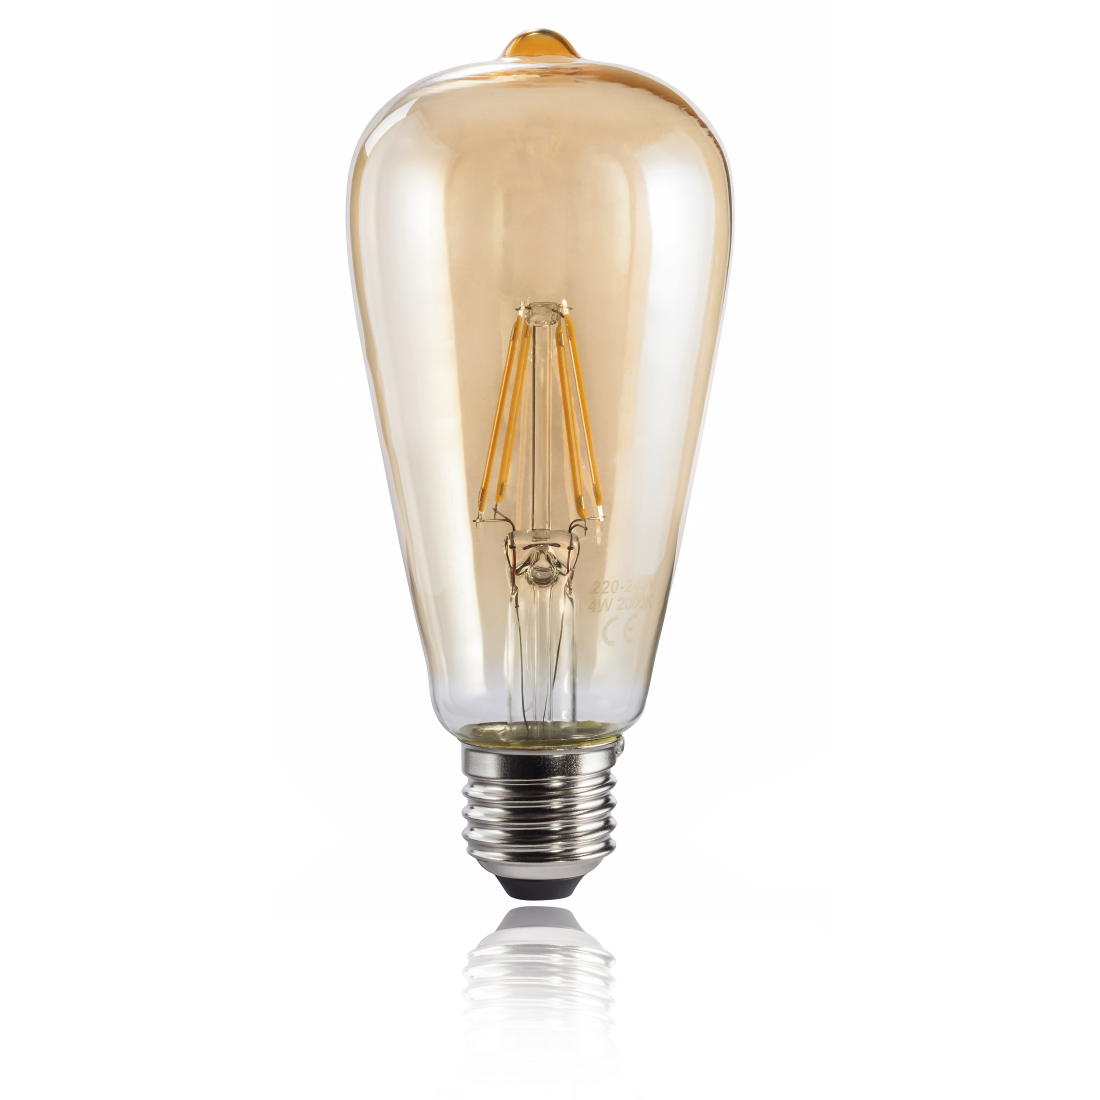 abx2 High-Res Image 2 - Xavax, Ampoule filament à LED, E27, 400lm rempl. amp. vintage 35W, blc chd